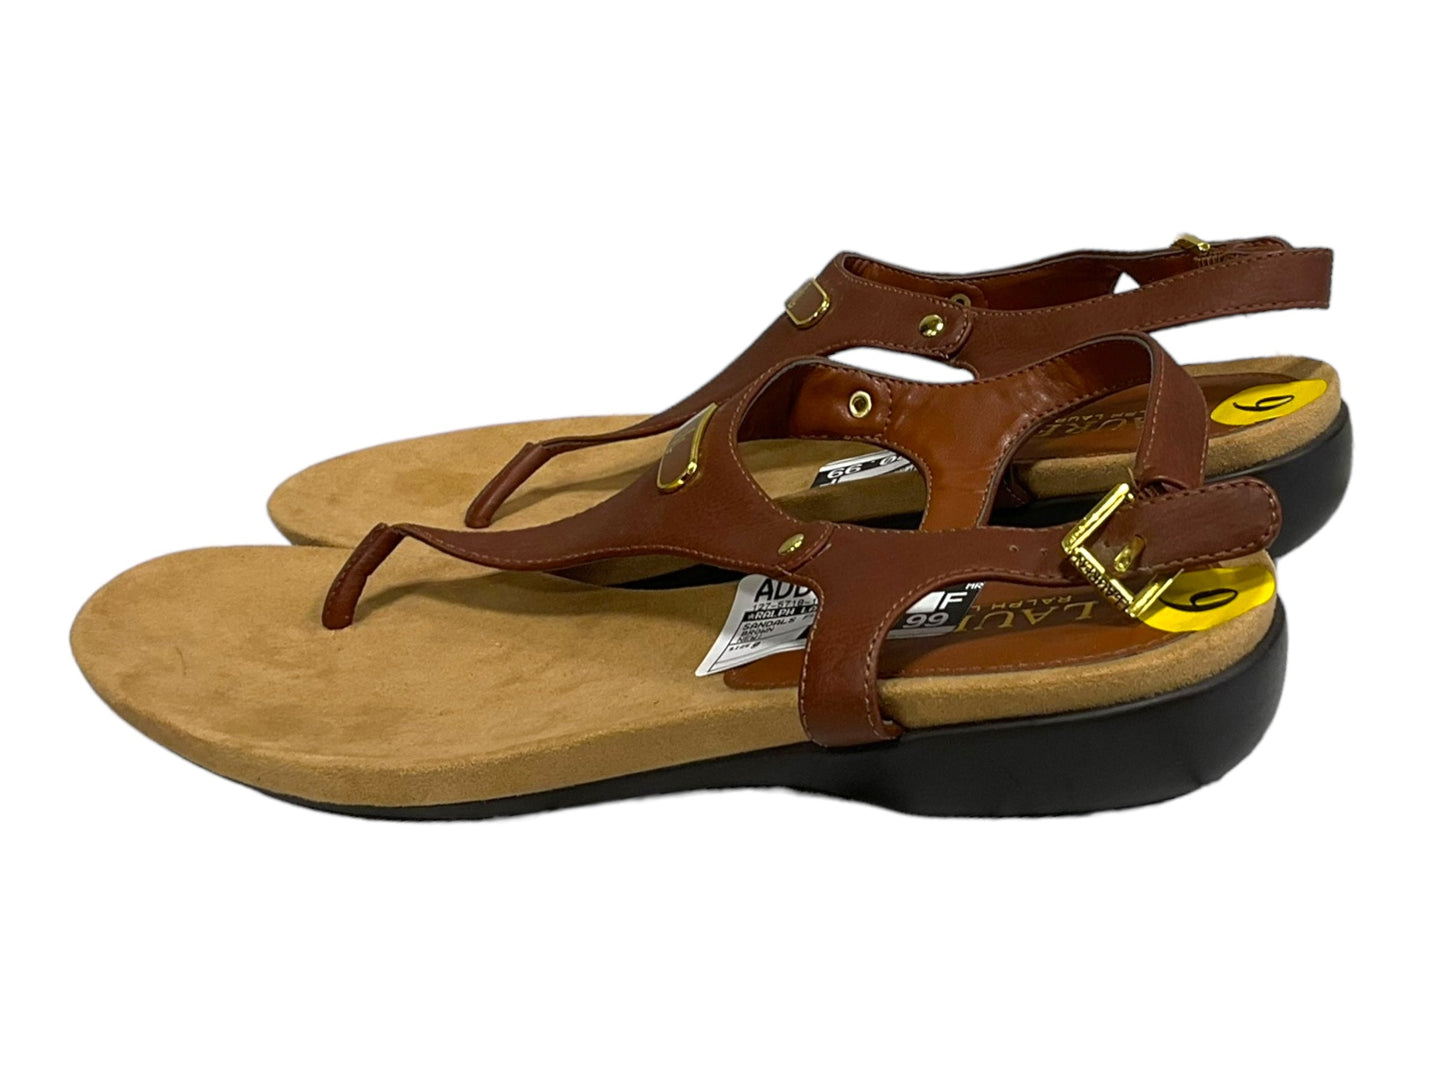 Brown Sandals Flats Ralph Lauren, Size 9